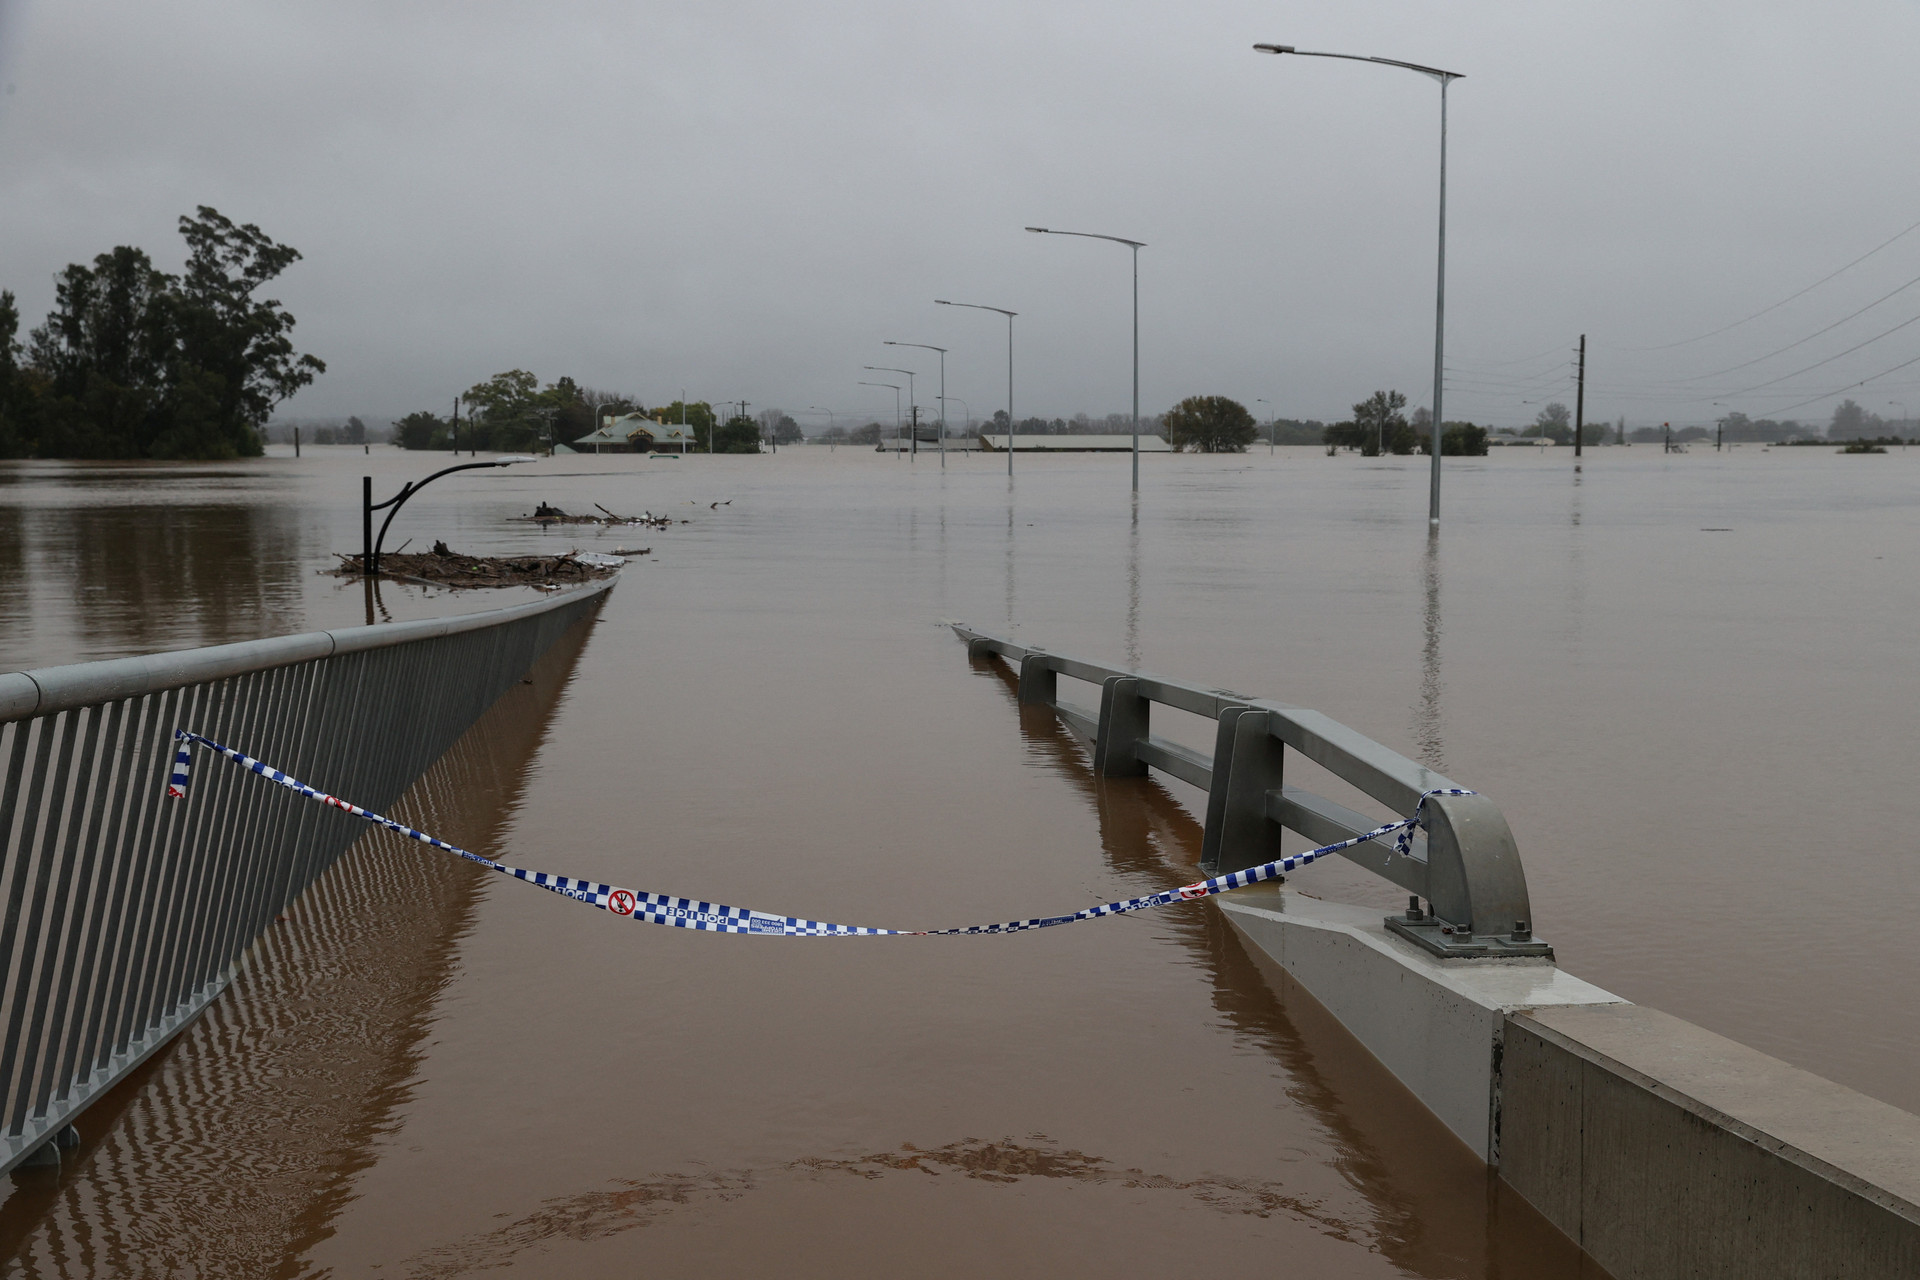 Thảm họa lũ lụt ở Úc: Xe hơi đậu trên nóc nhà, 50.000 dân sơ tán - Ảnh 5.